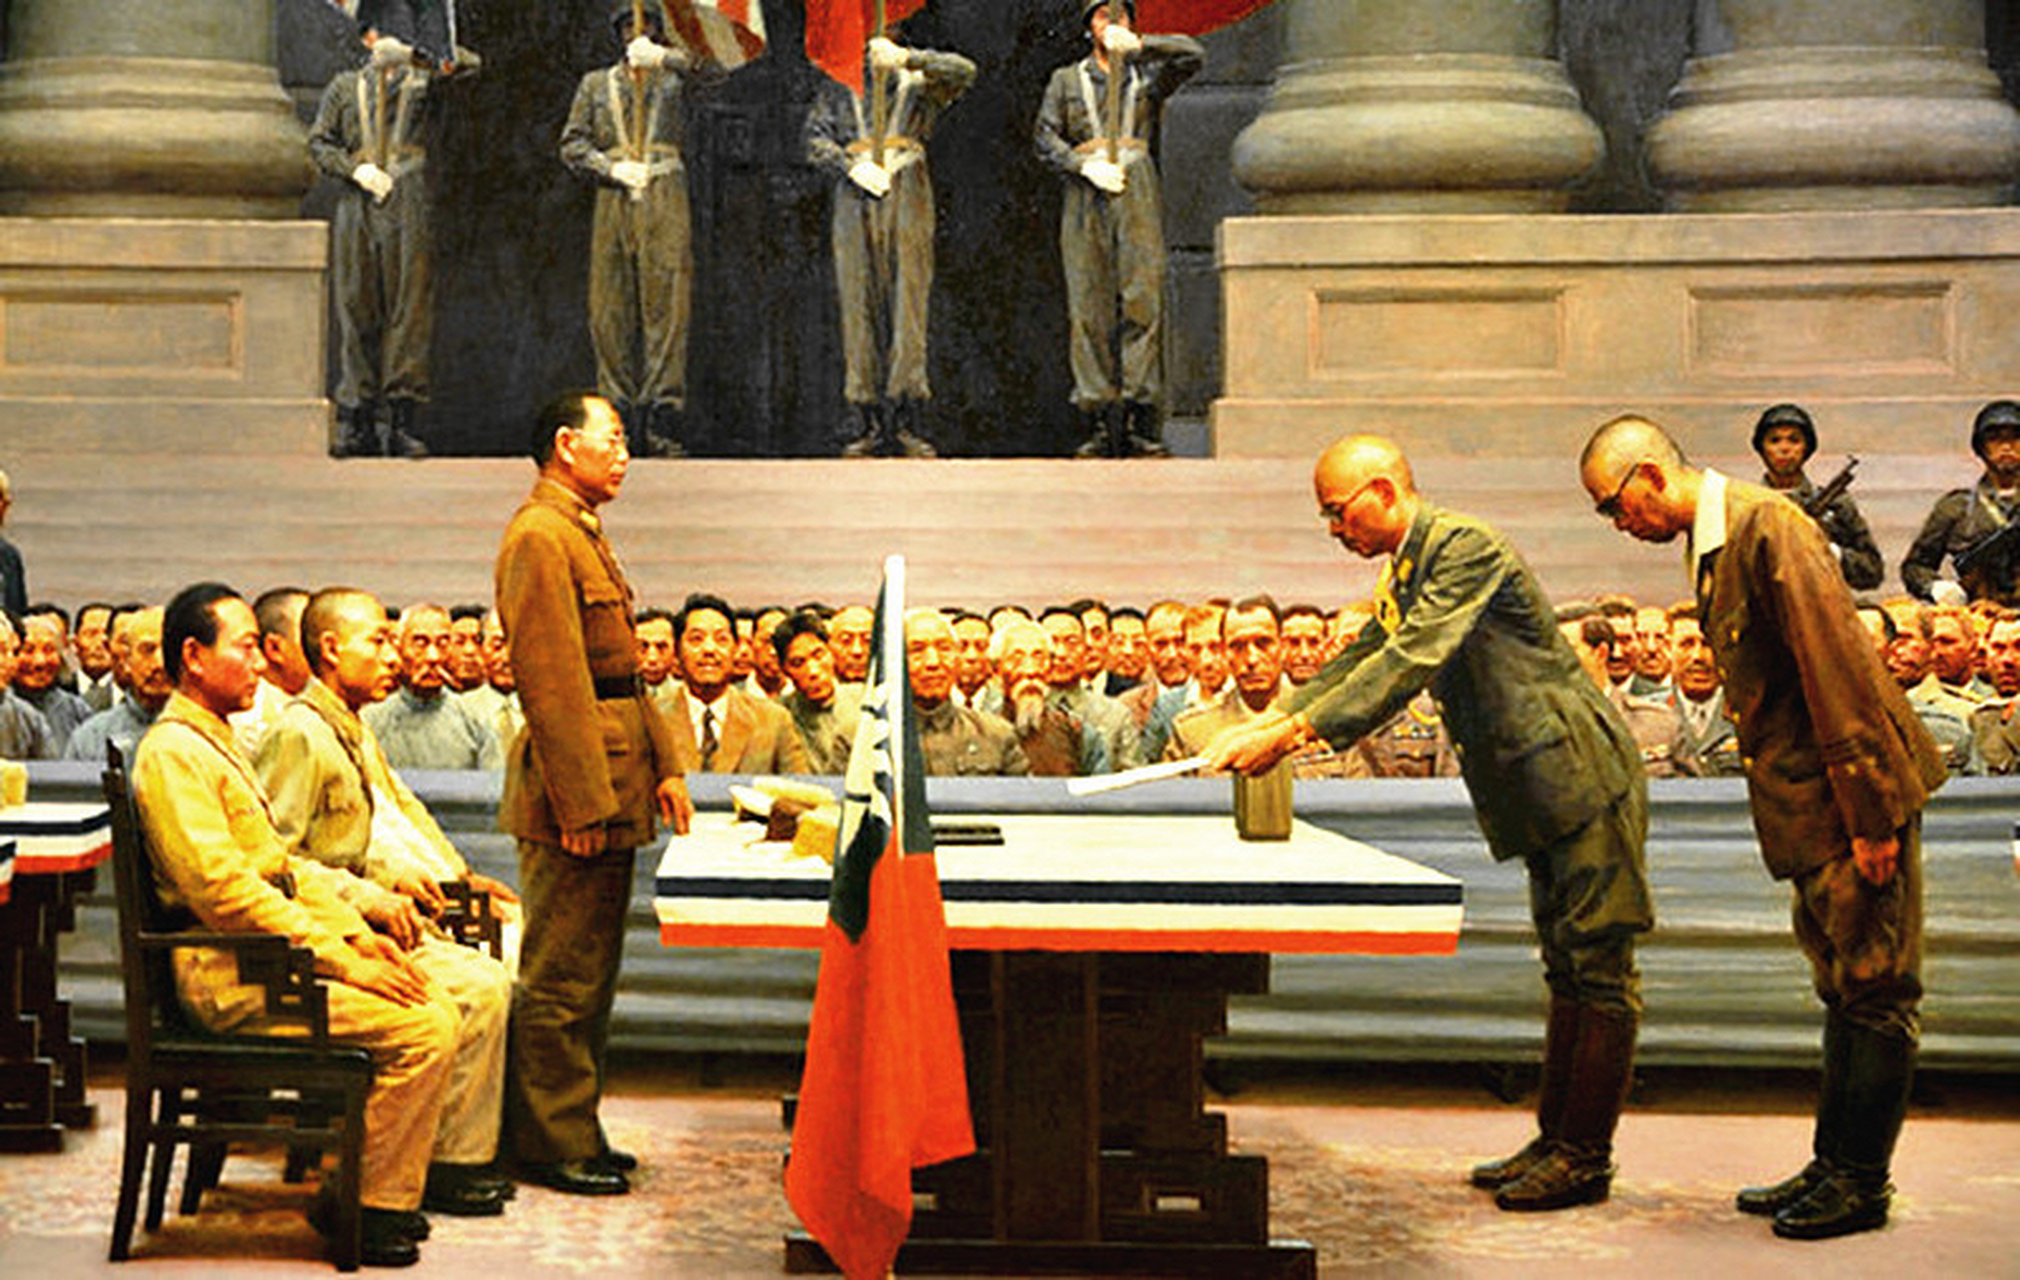 二战日本投降仪式图片